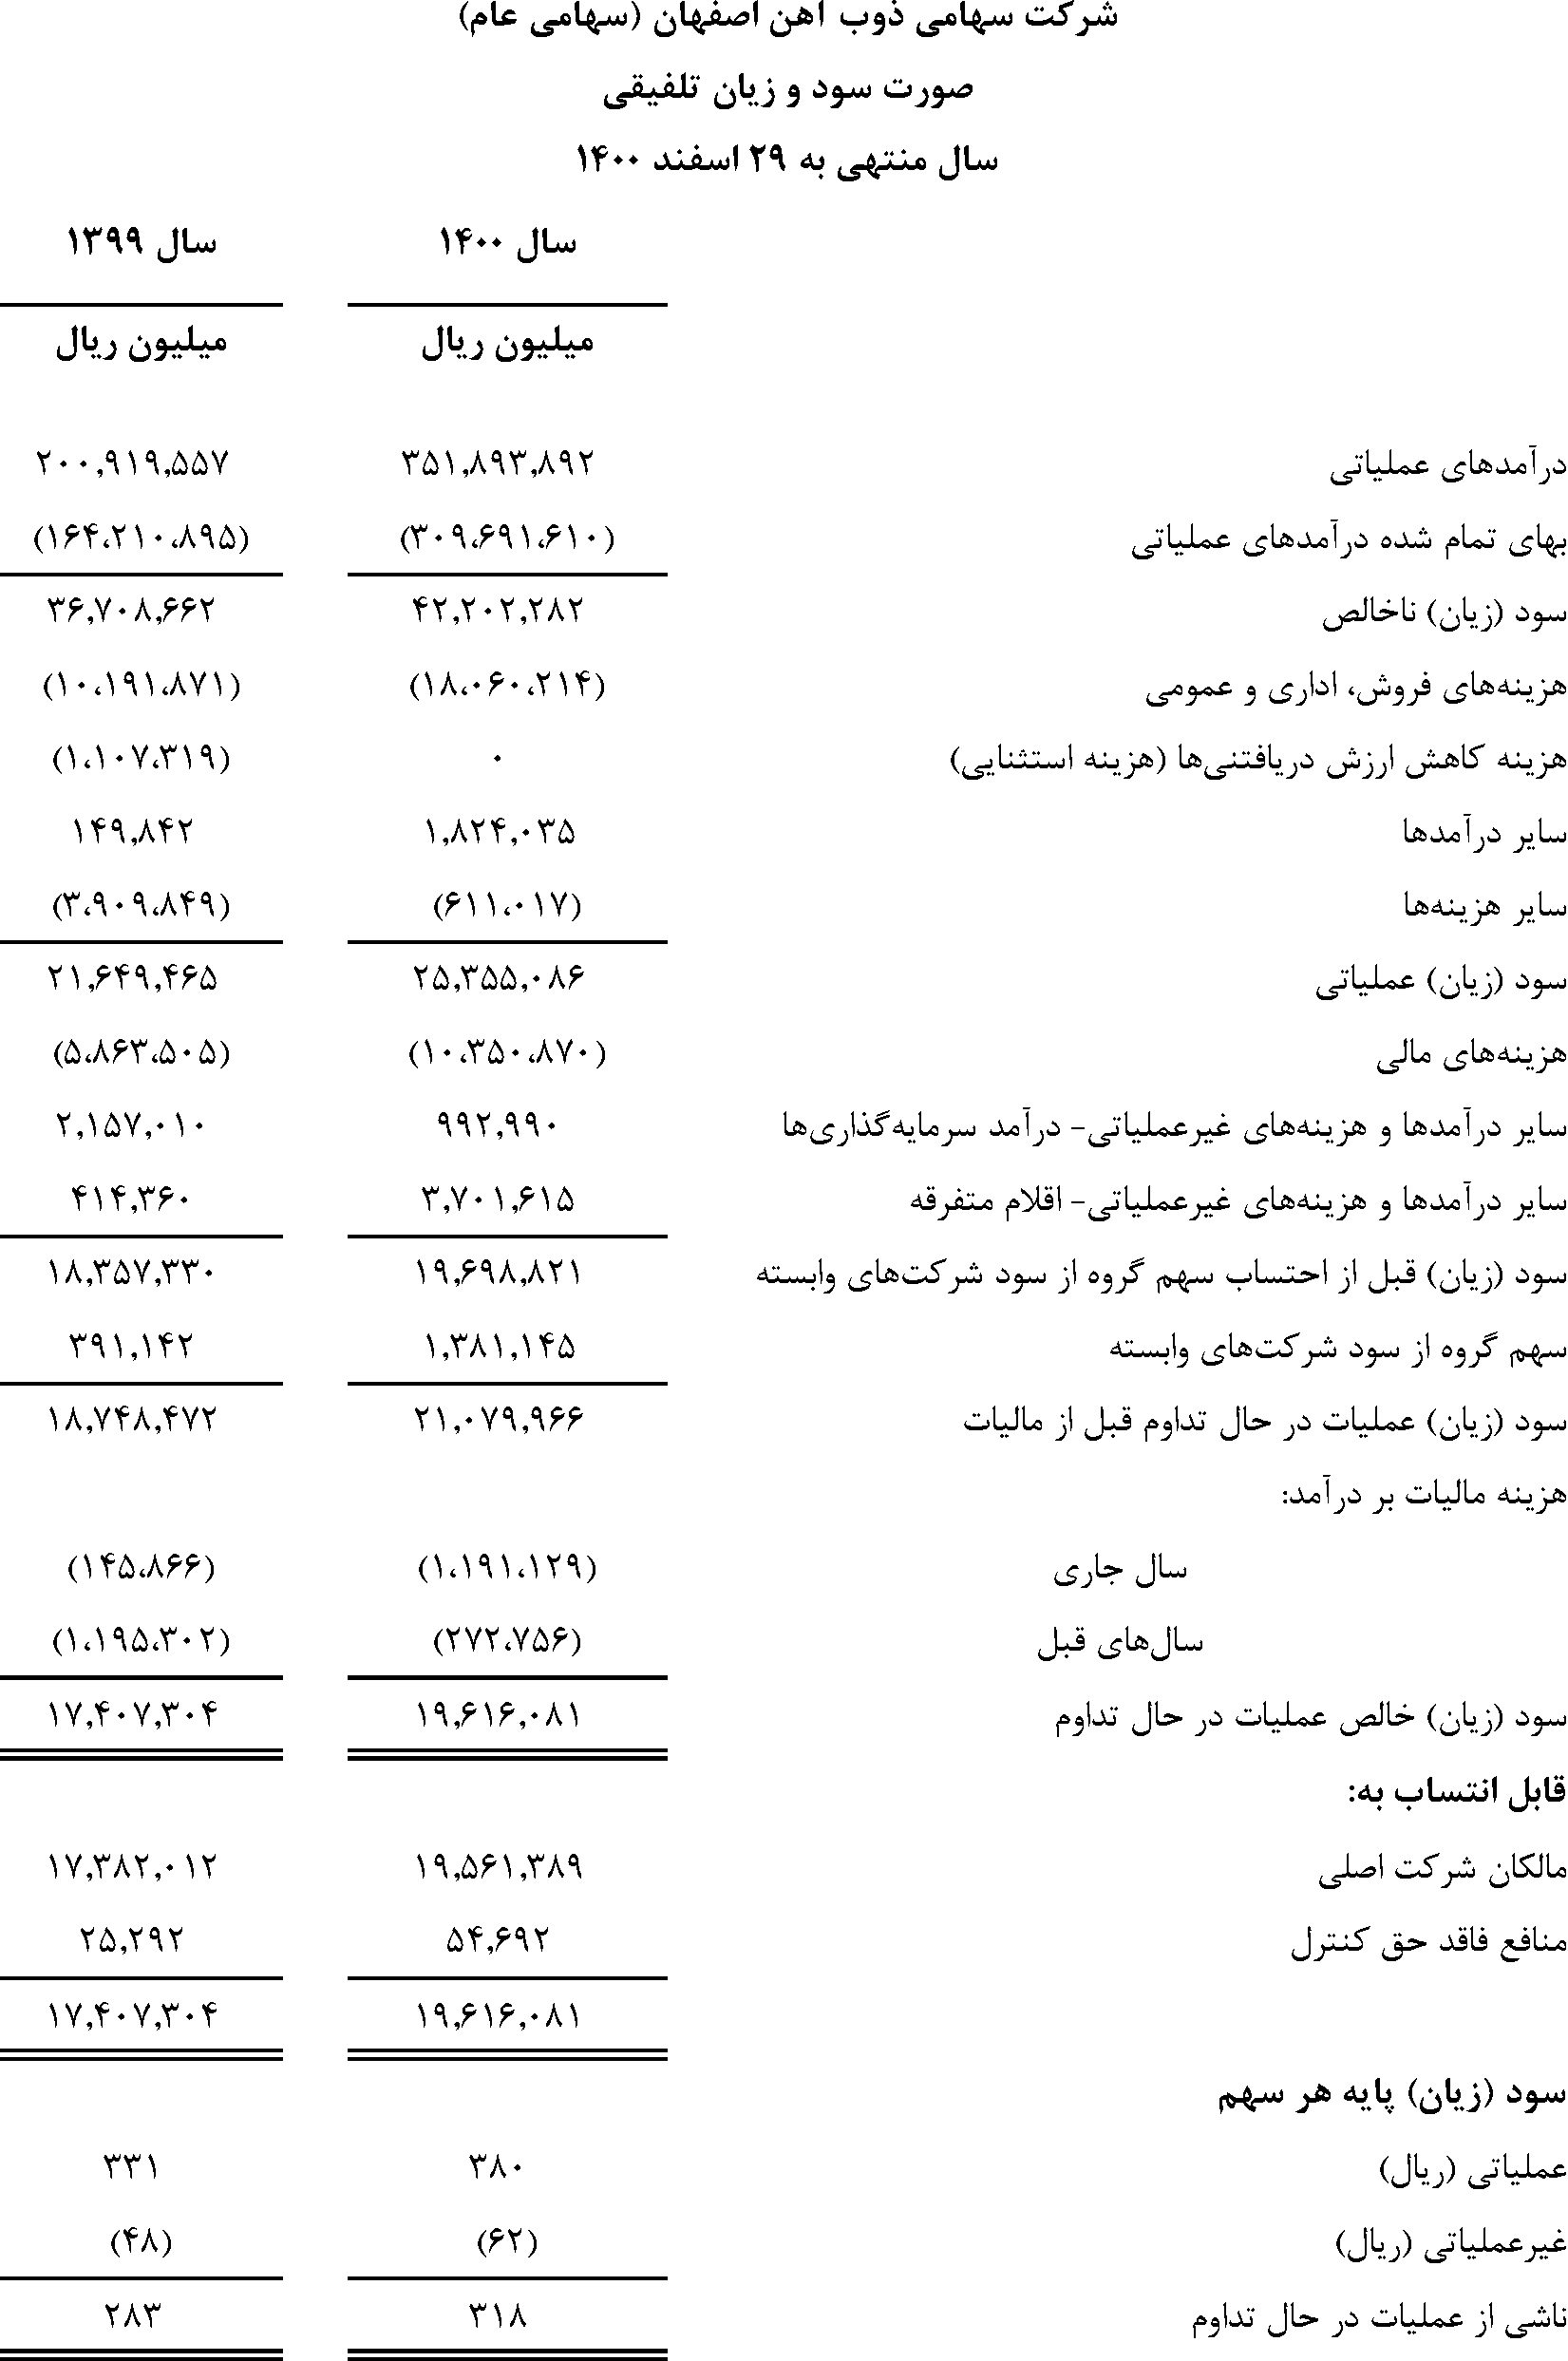 صورت سود و زیان تلفیقی شرکت ذوب آهن اصفهان